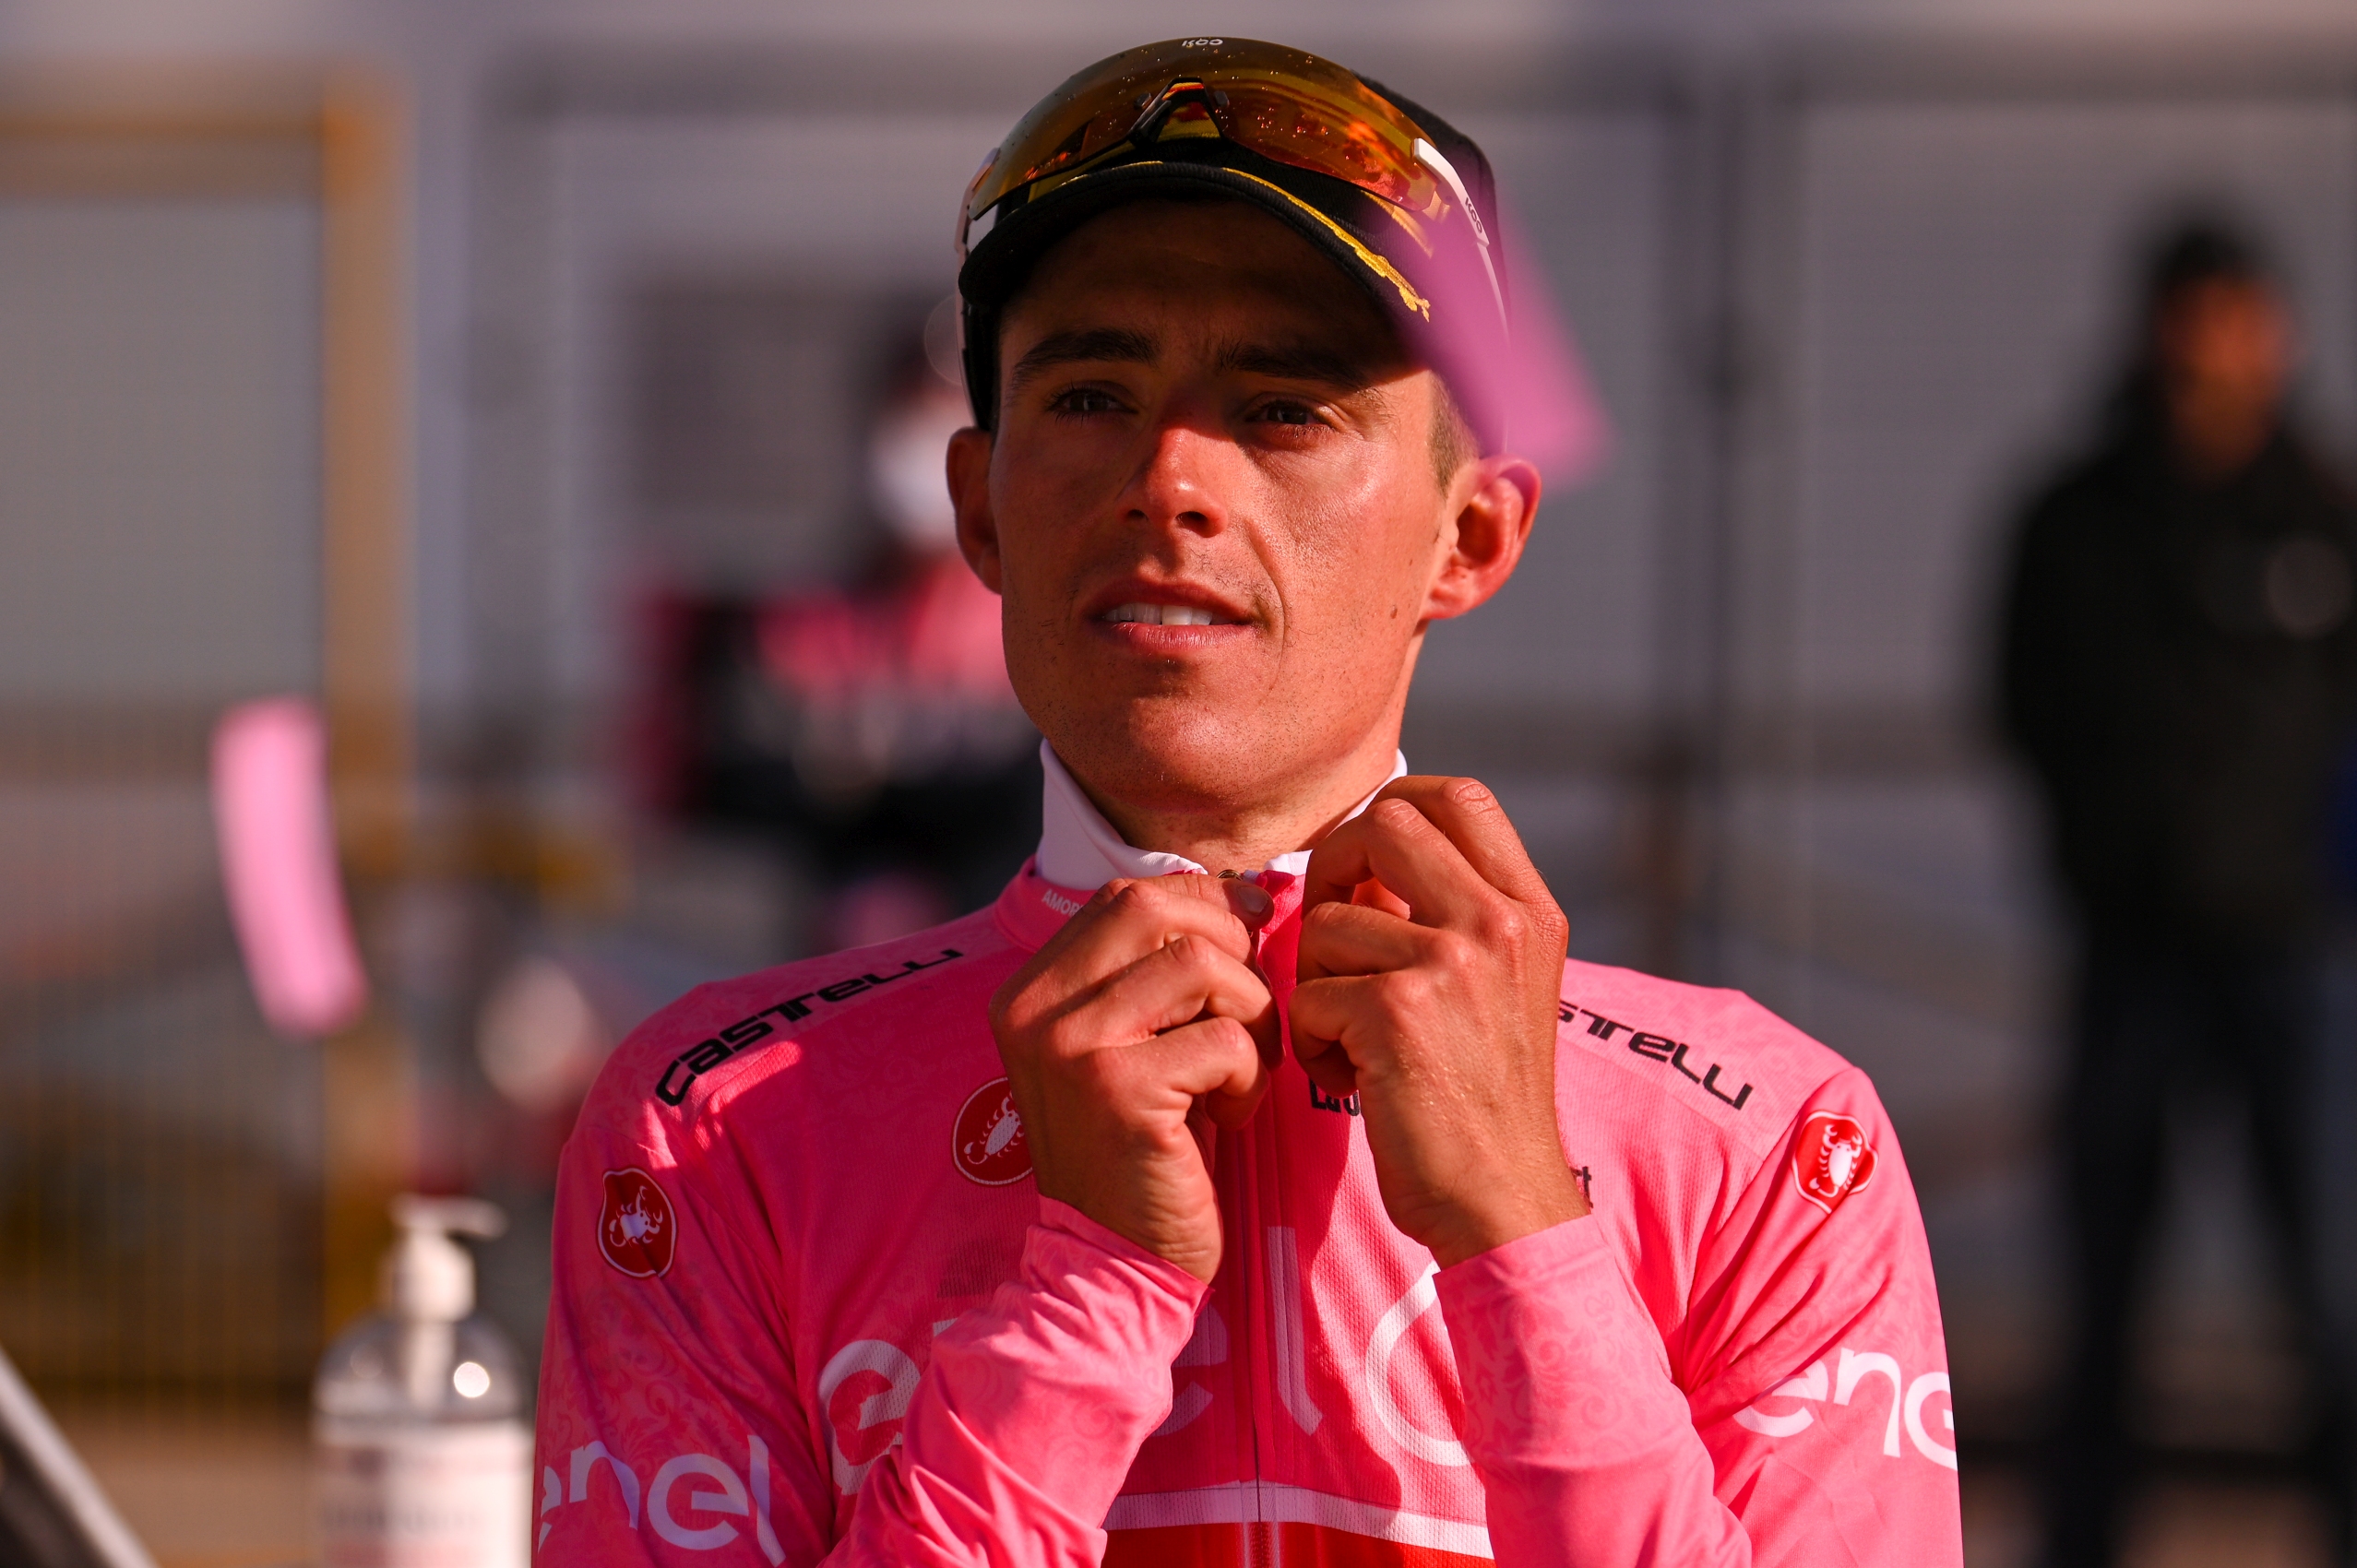 Juan Pedro Lopez w koszulce lidera Giro d'Italia